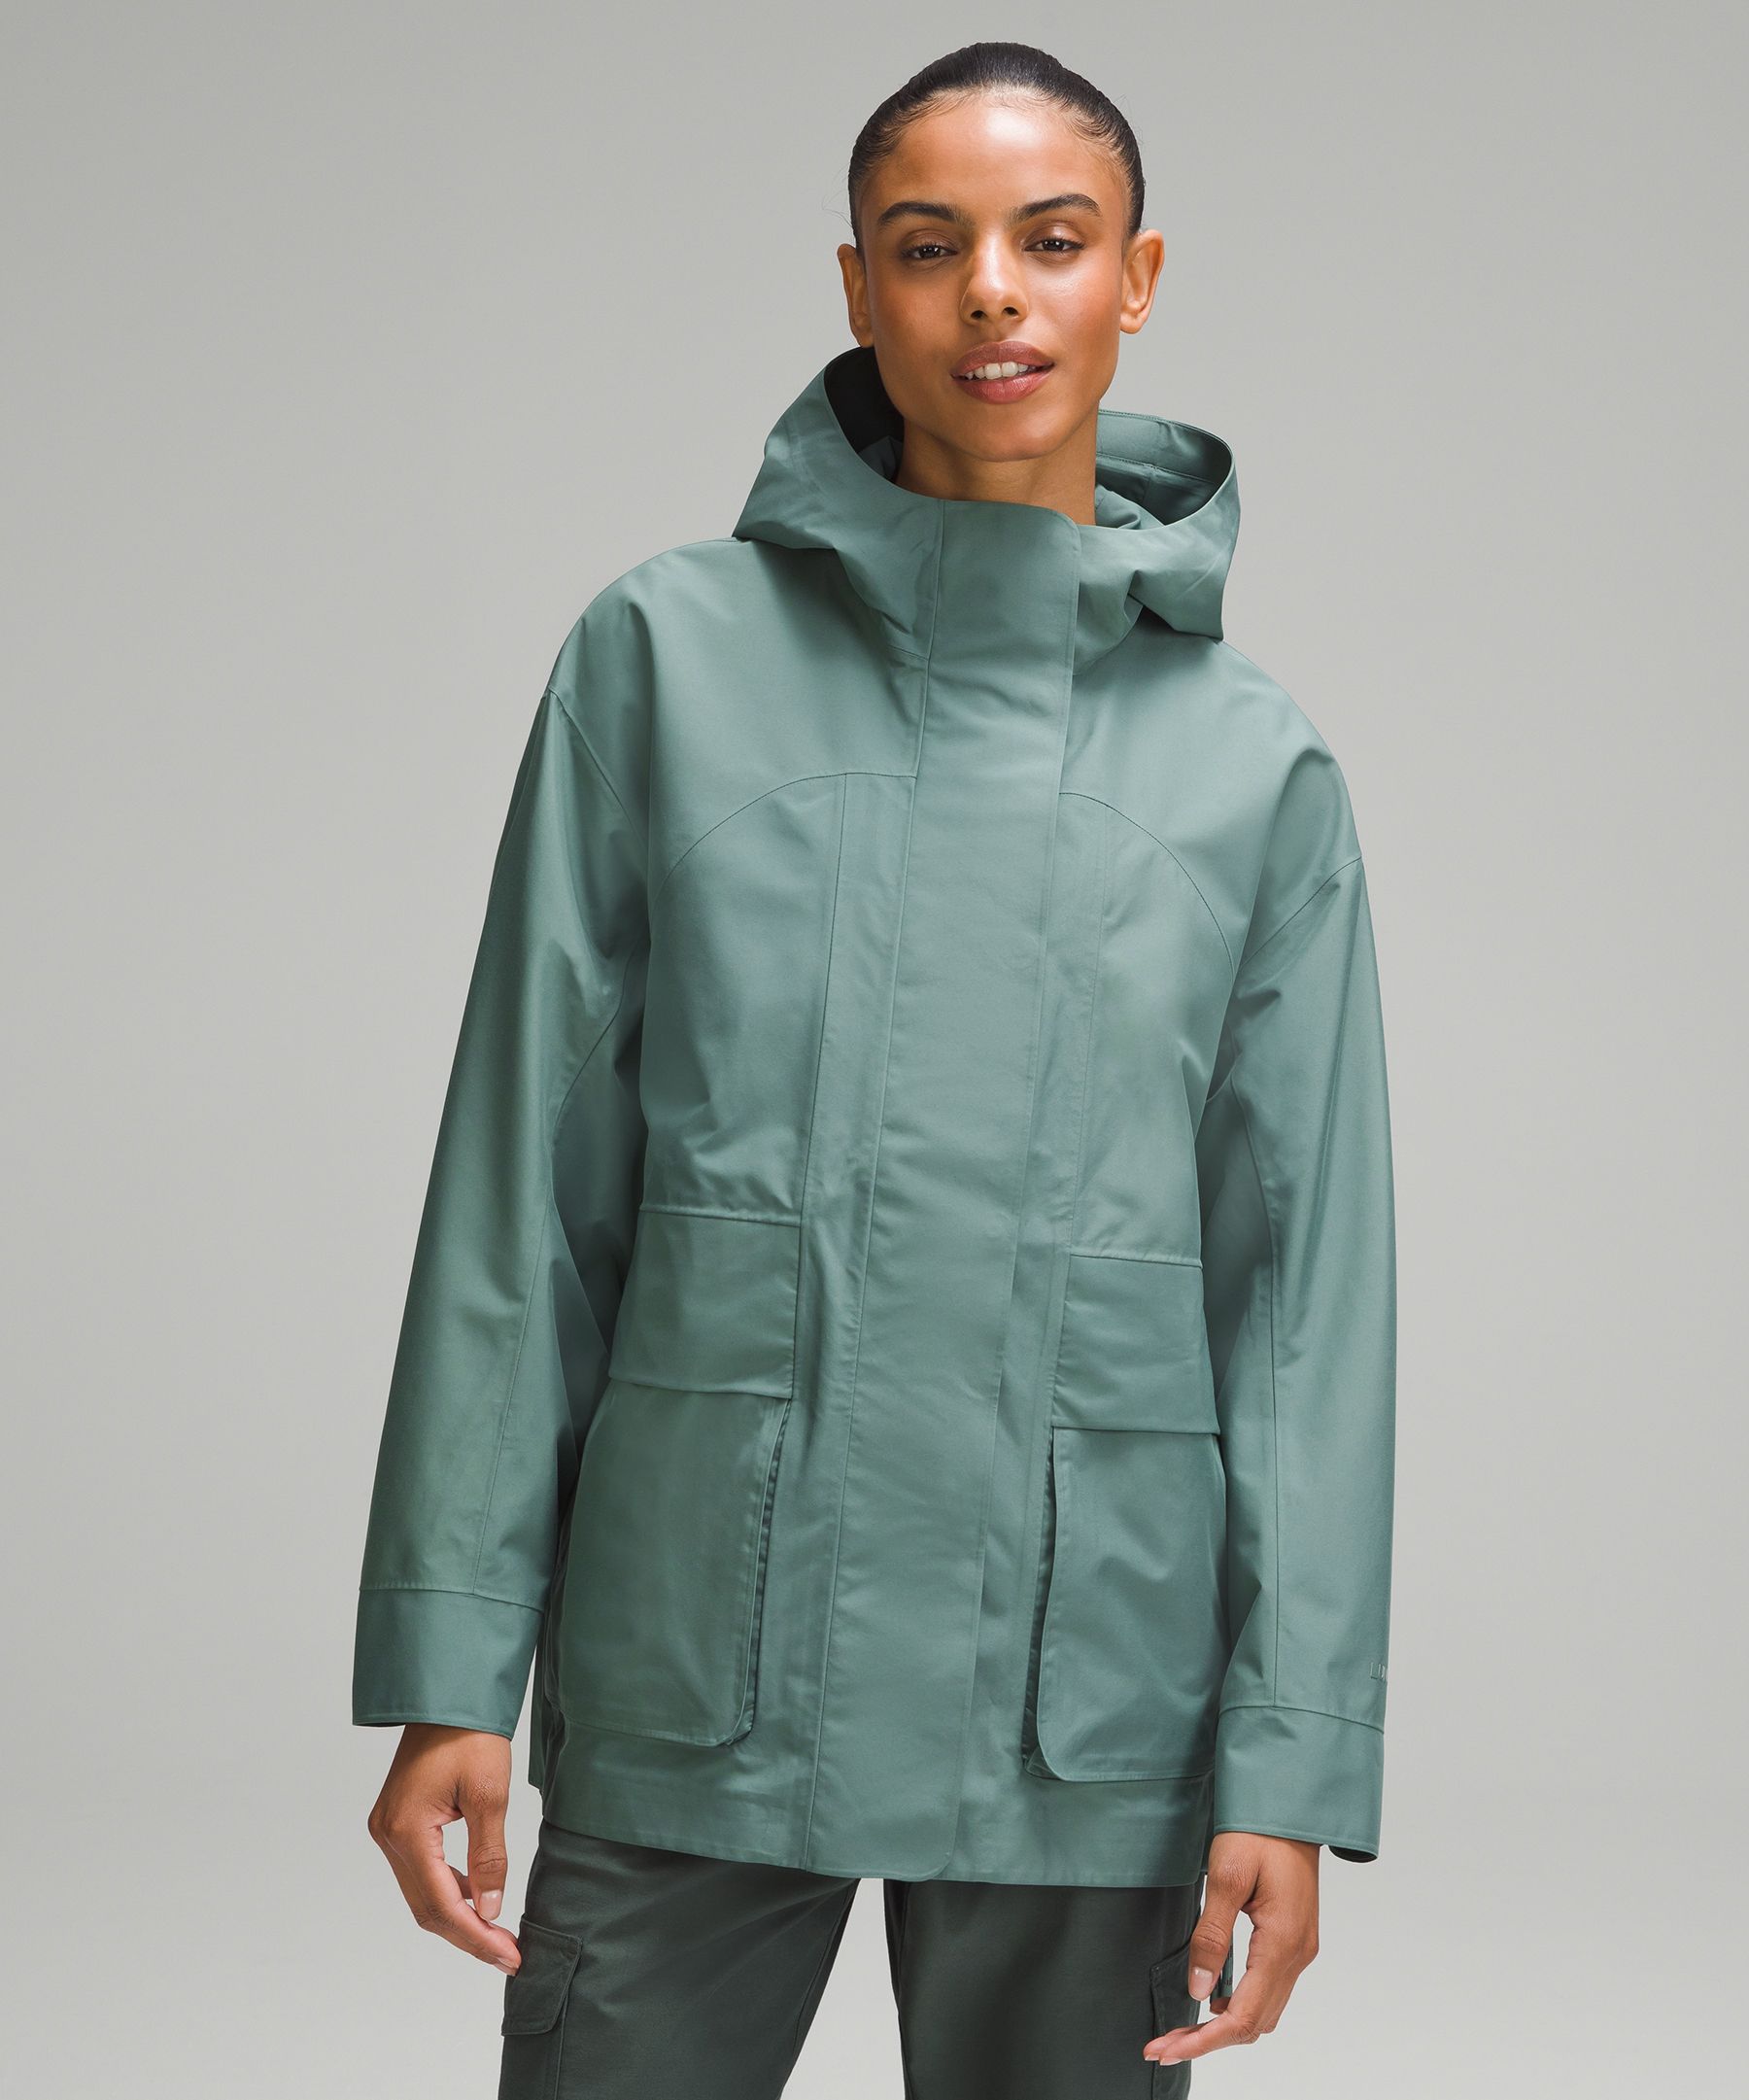 Lululemon Oversized Hooded Rain Jacket